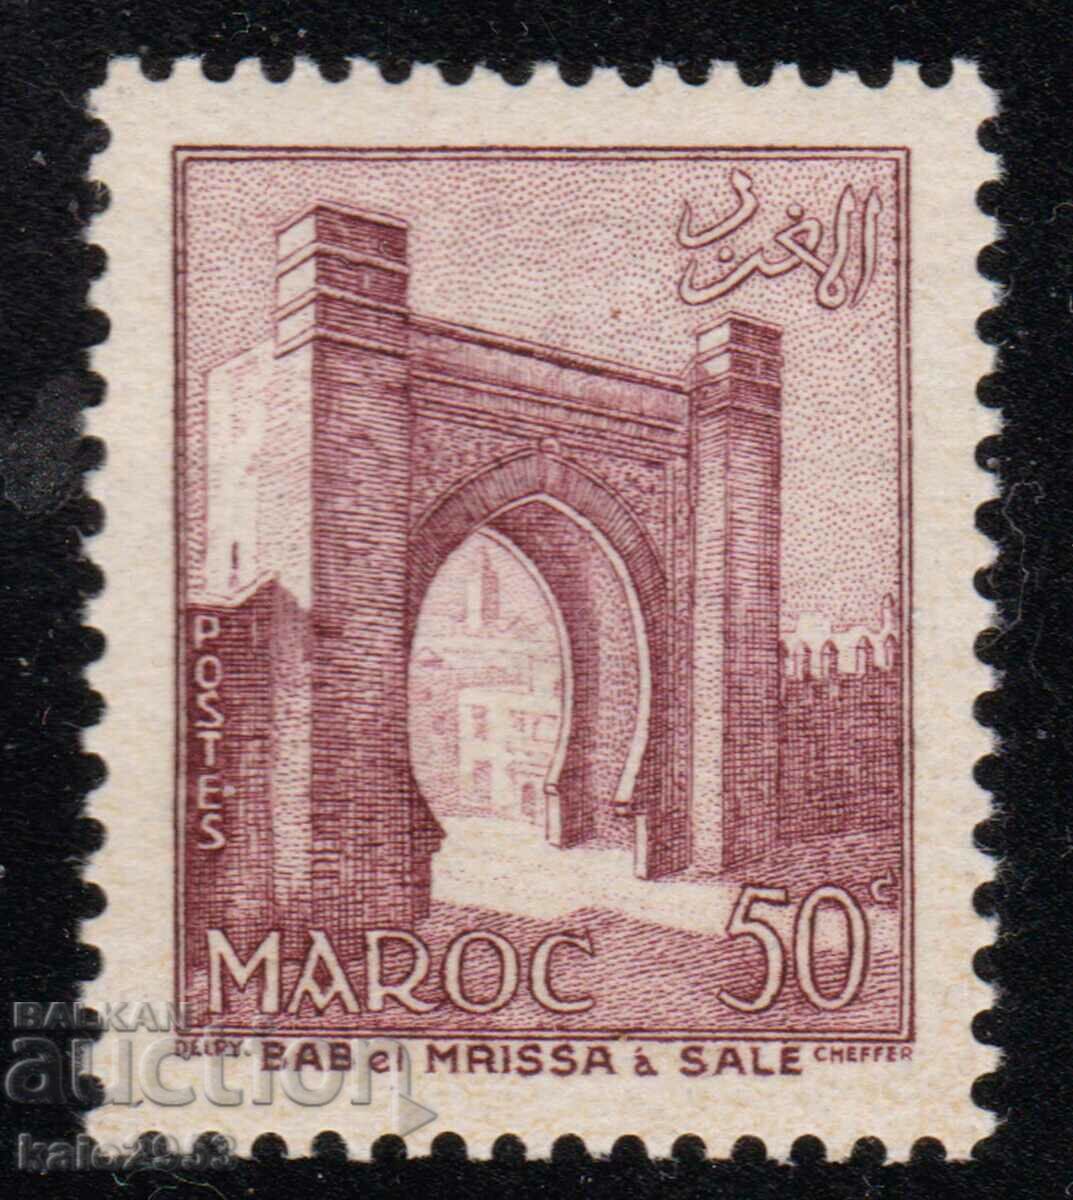 Maroc-1955-Poarta-obisnuita-Fes,MNH